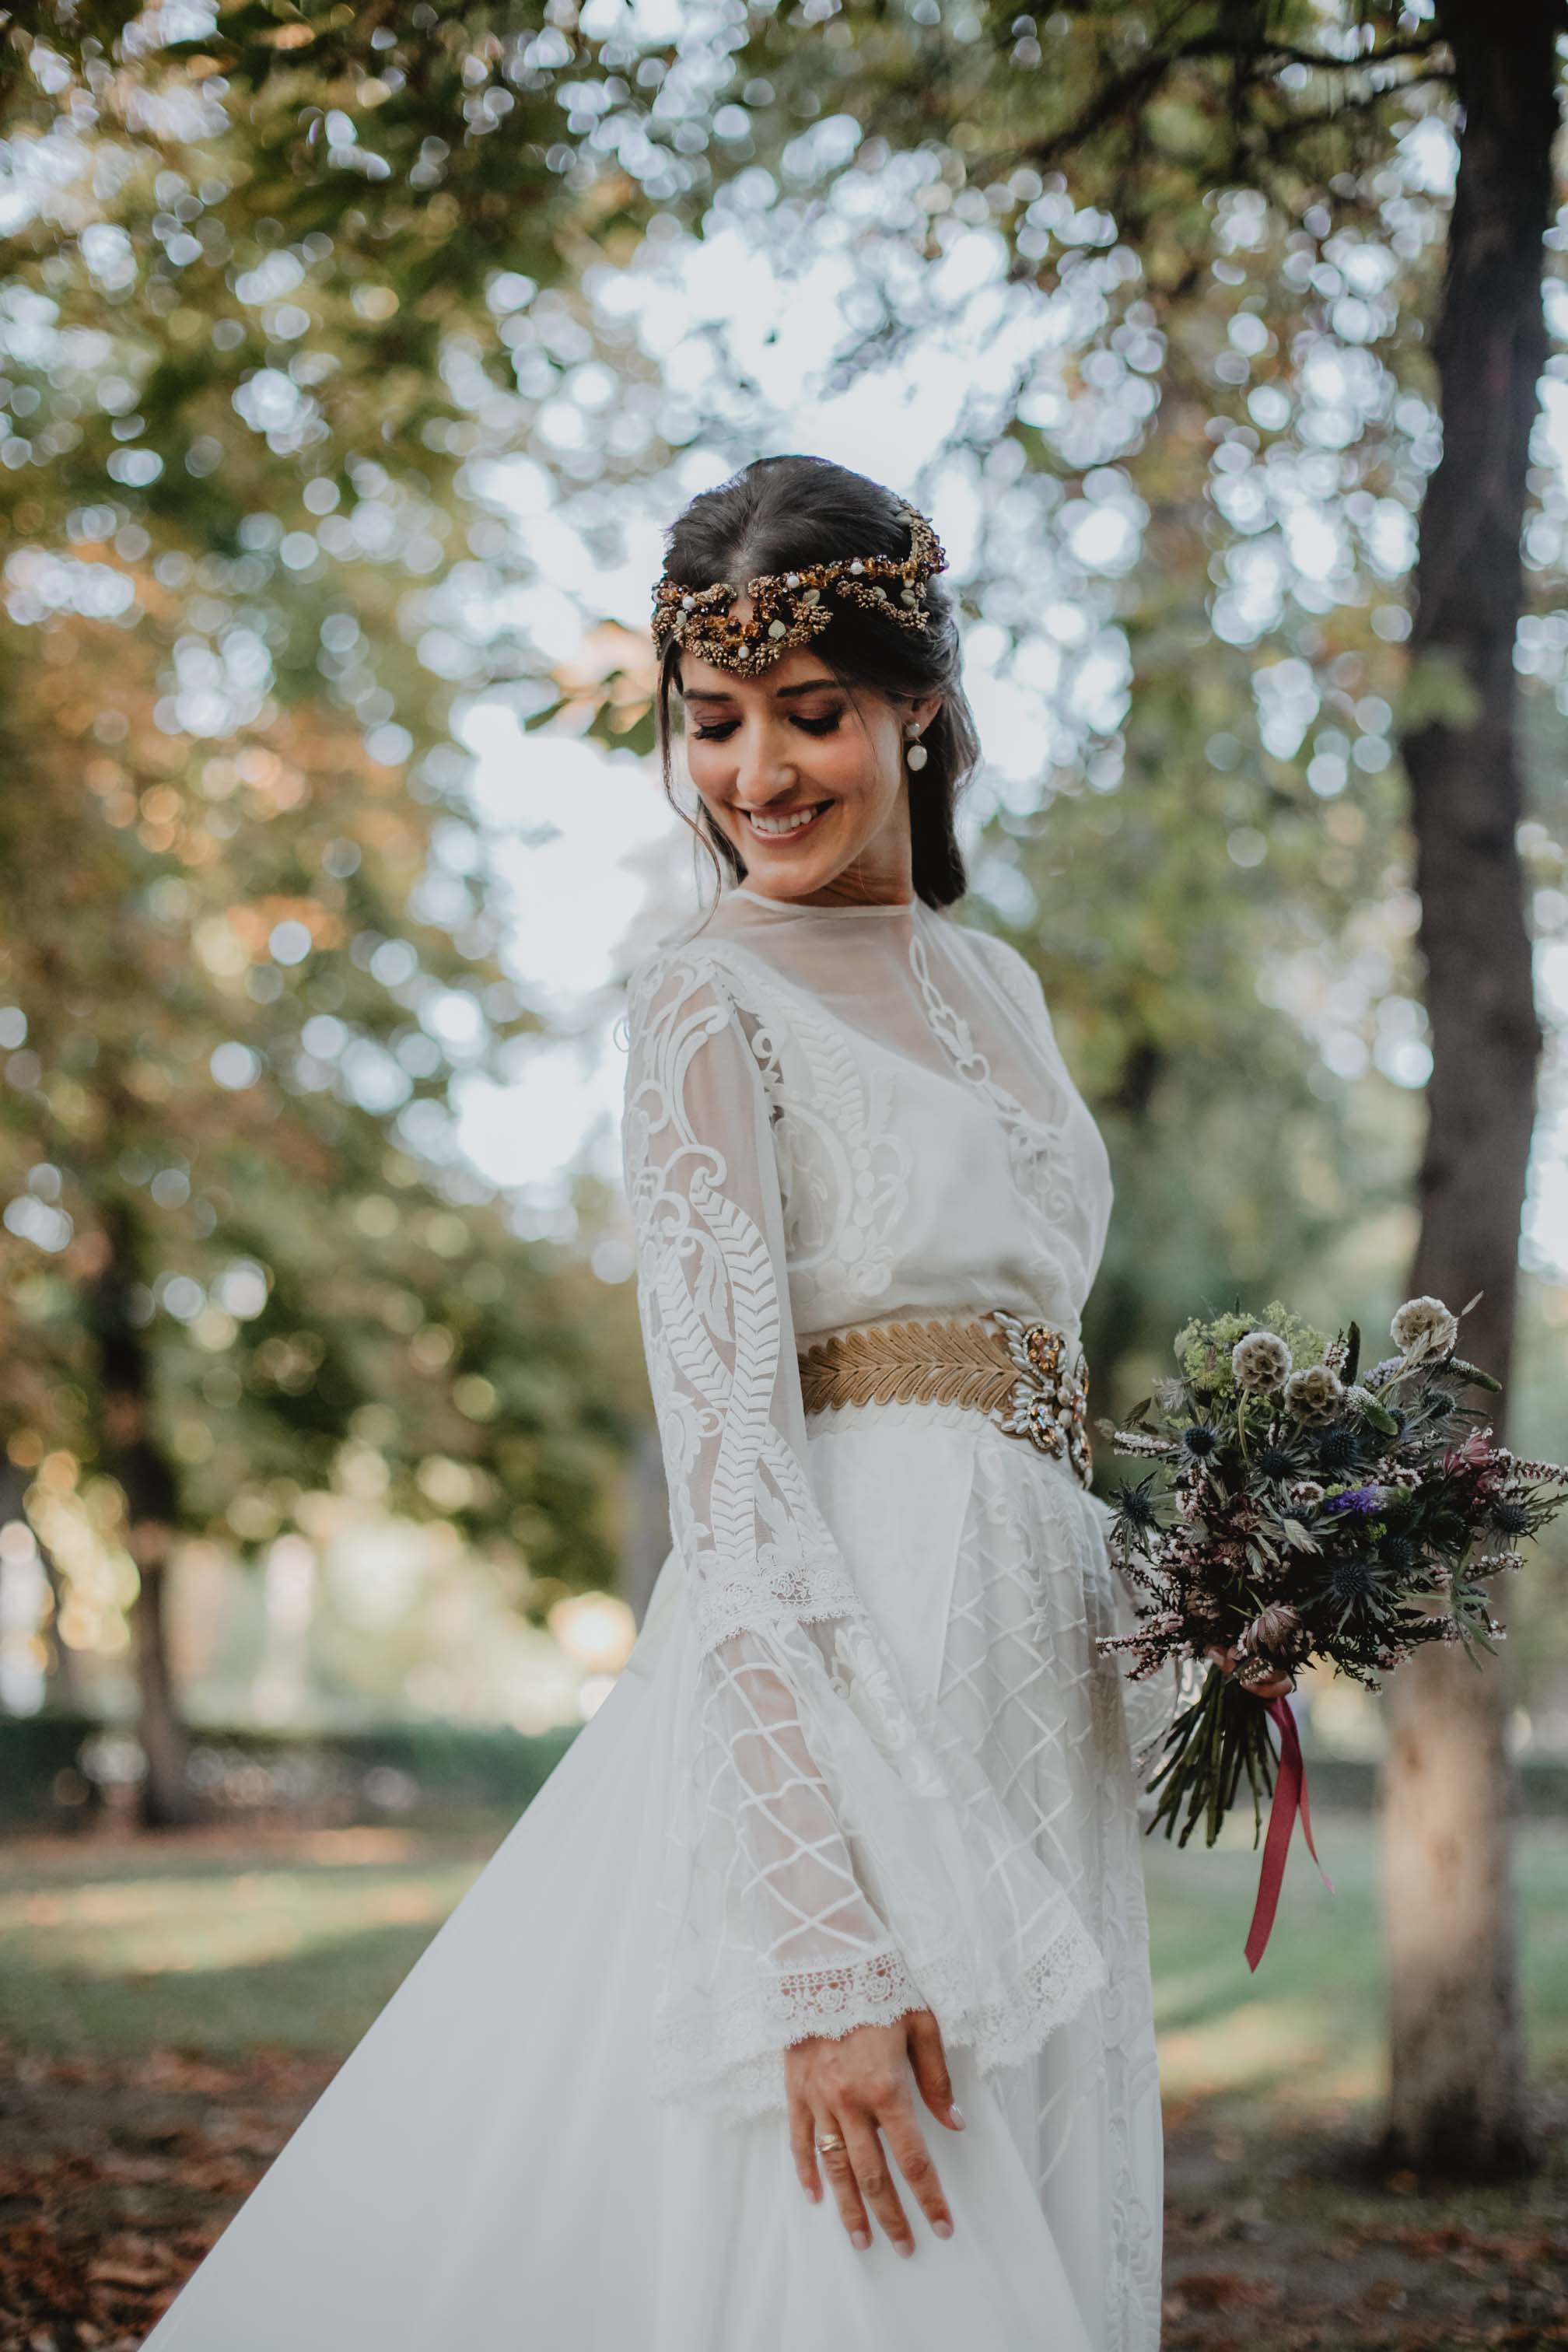 Novia 2019 vestido medieval boho puntilla cola quita y pon espalda Matilde Cano